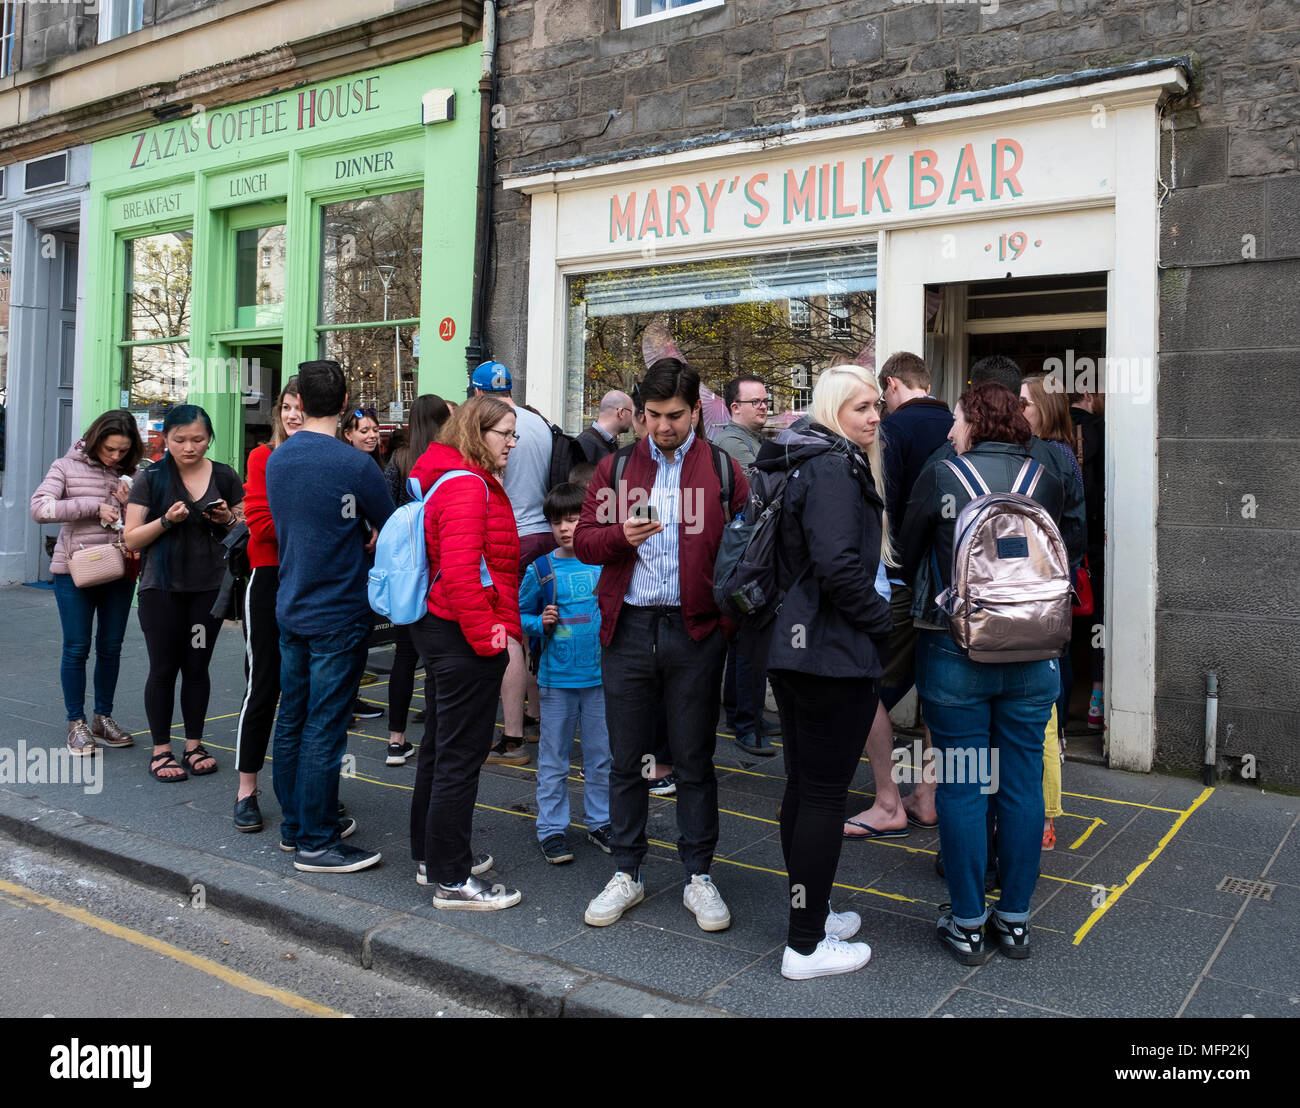 Des gens de l'extérieur de la file d'Mary's Milk Bar sur Grassmarket dans la vieille ville d'Édimbourg, Écosse, Royaume-Uni Banque D'Images